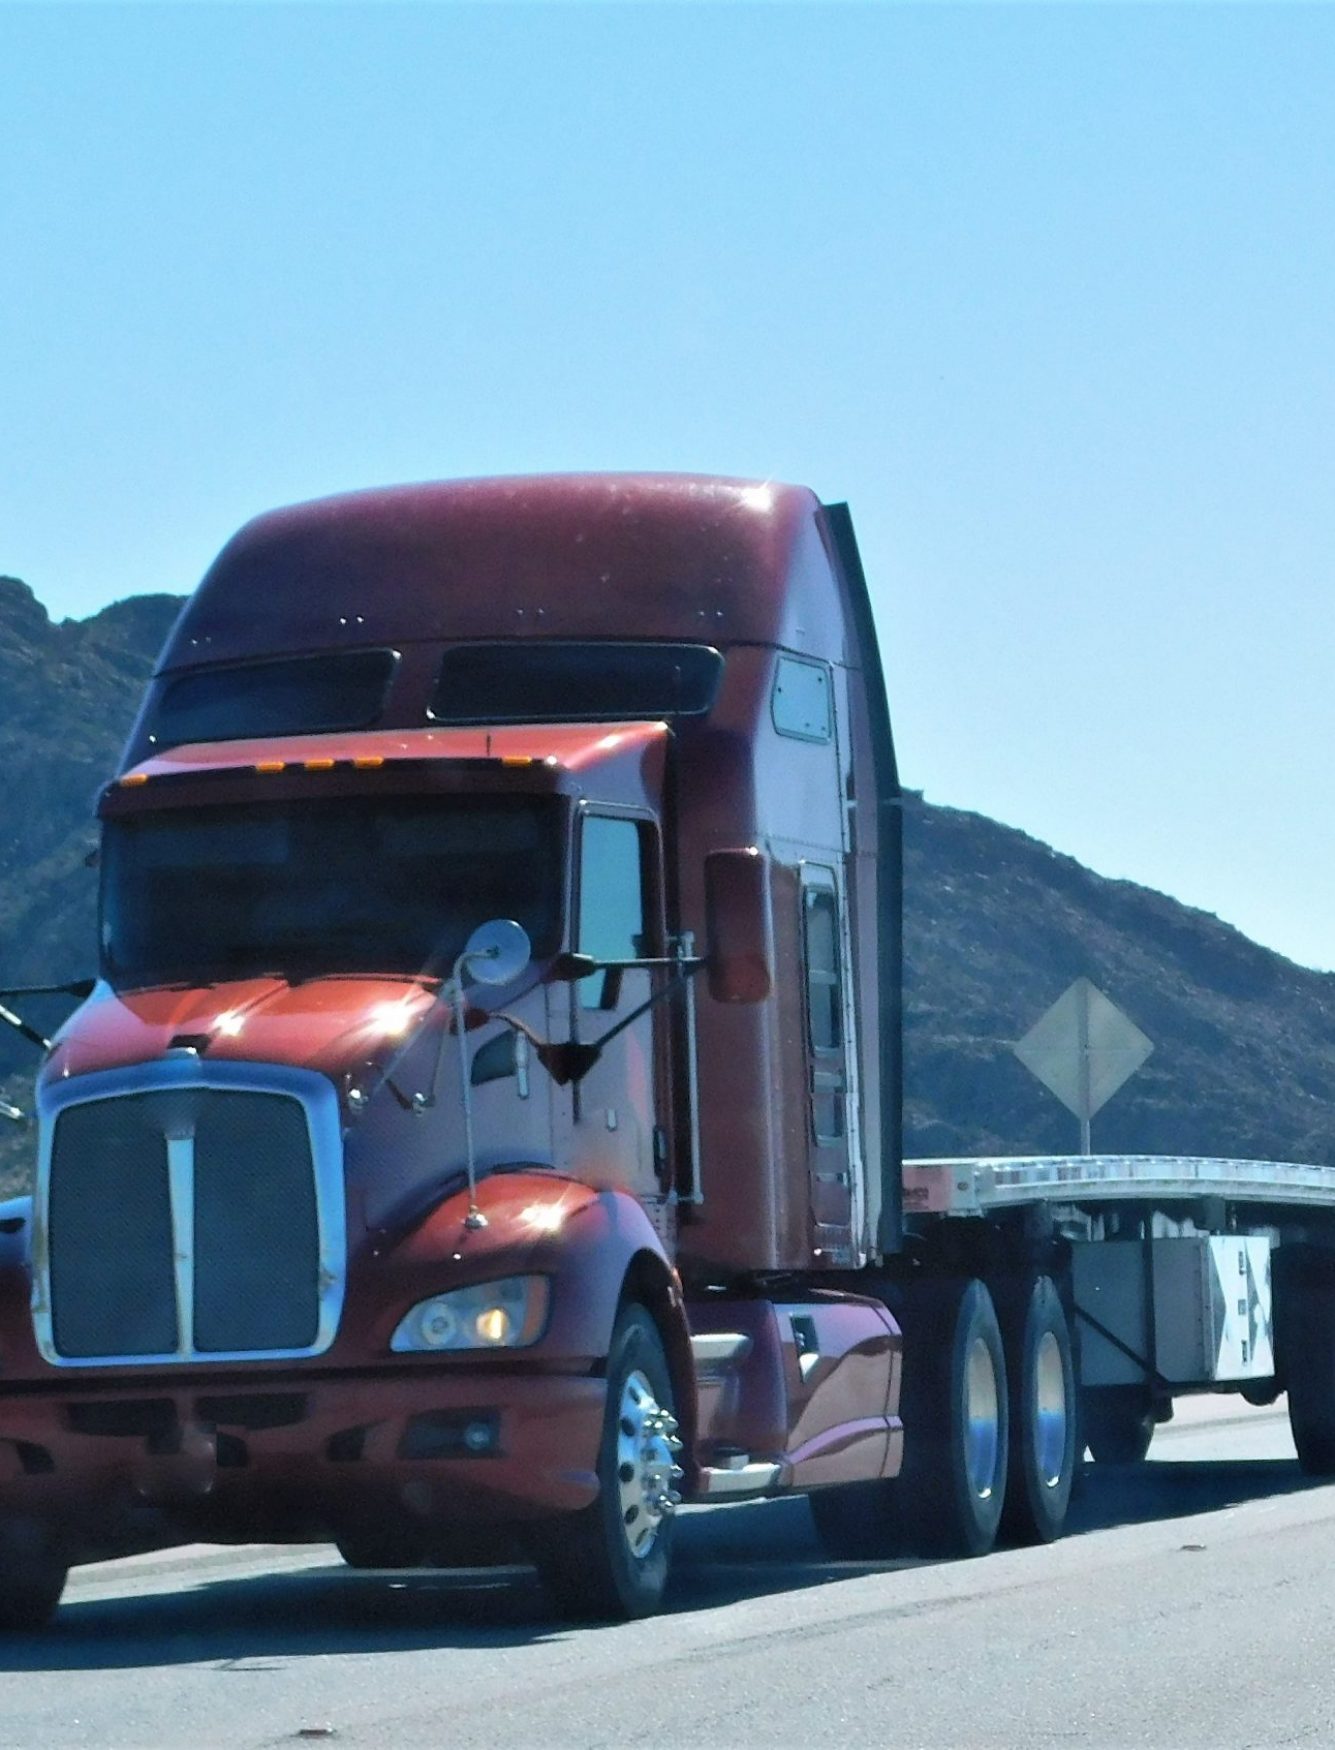 trucking-no-load-flat-bed-trailer-2022-08-01-01-23-34-utc-scaled-pvbx0a9tybyf9u69g9c4zpkk6tqsljp7zlab6v4izg